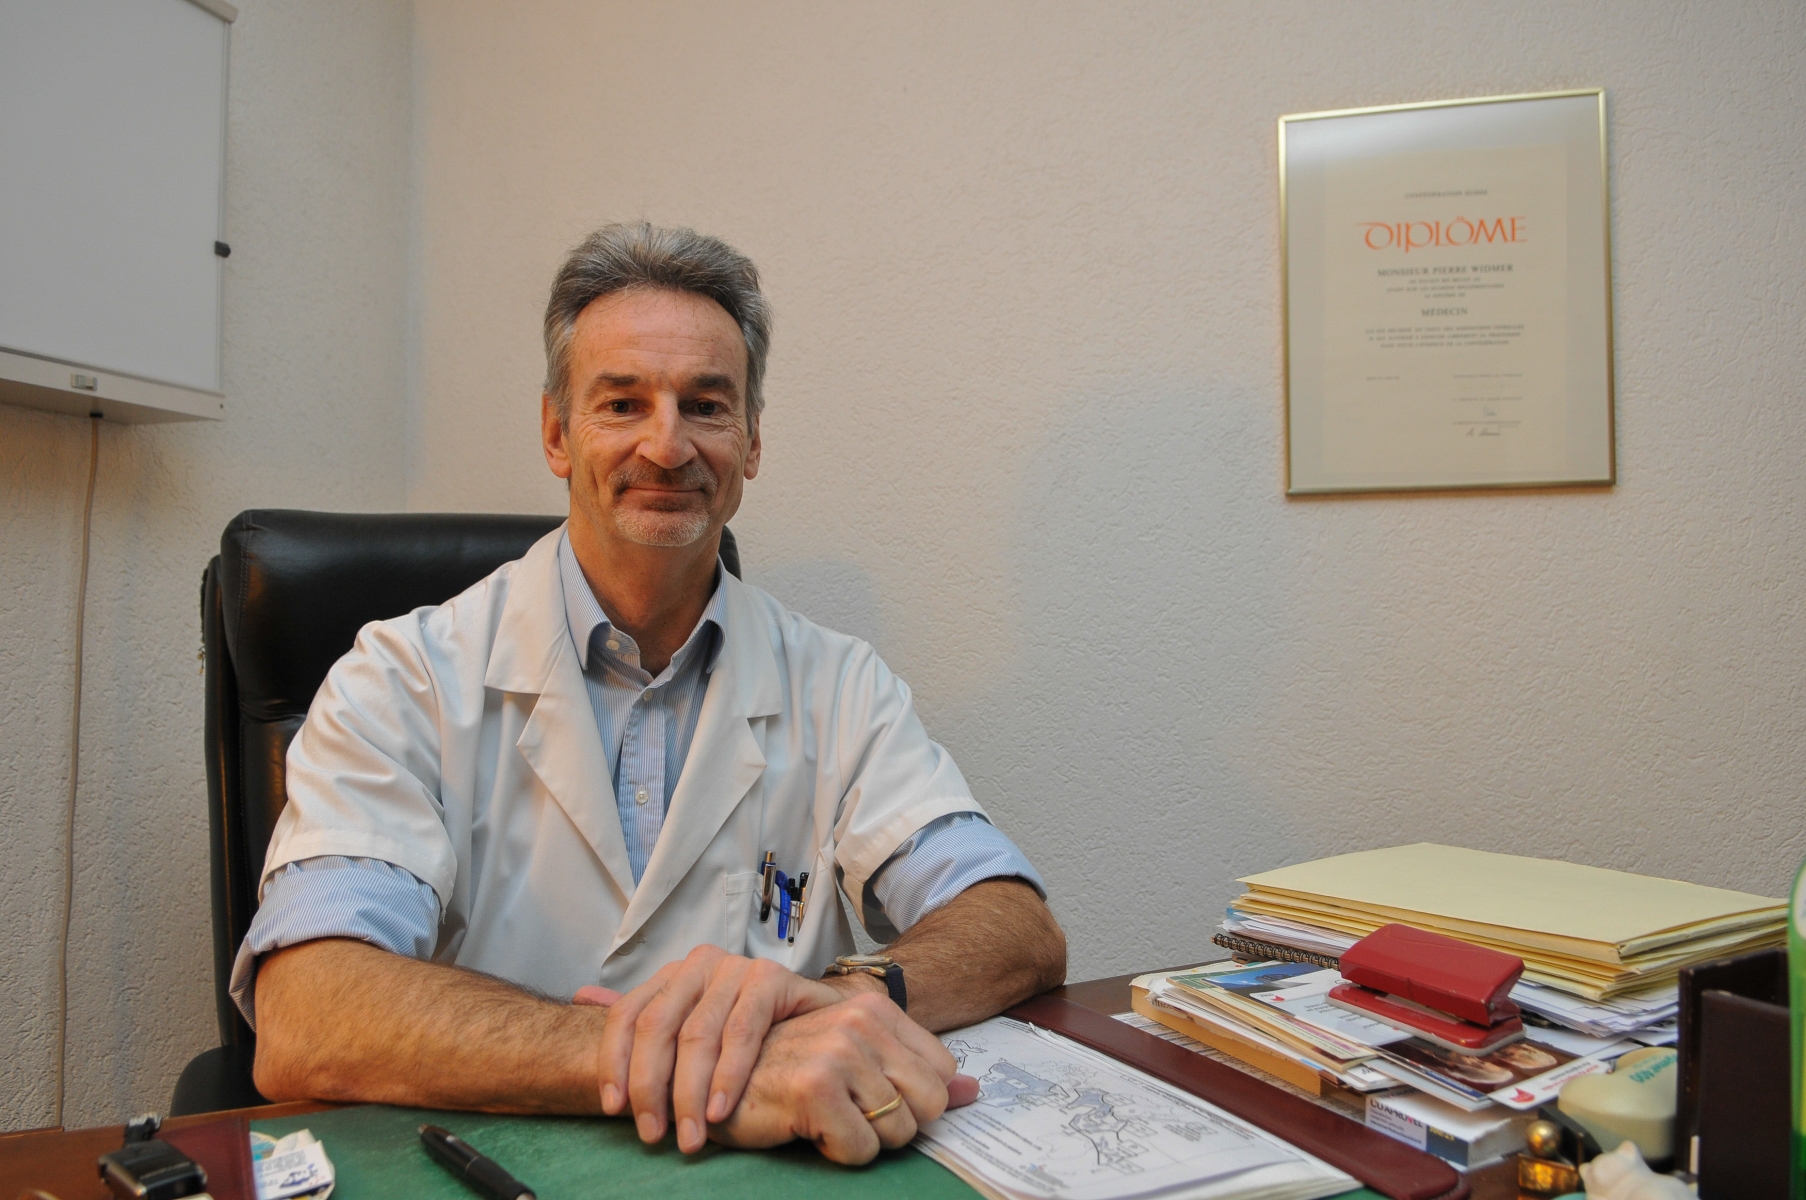 Le docteur Pierre Widmer, responsable du service de garde des médecins du district de Nyon